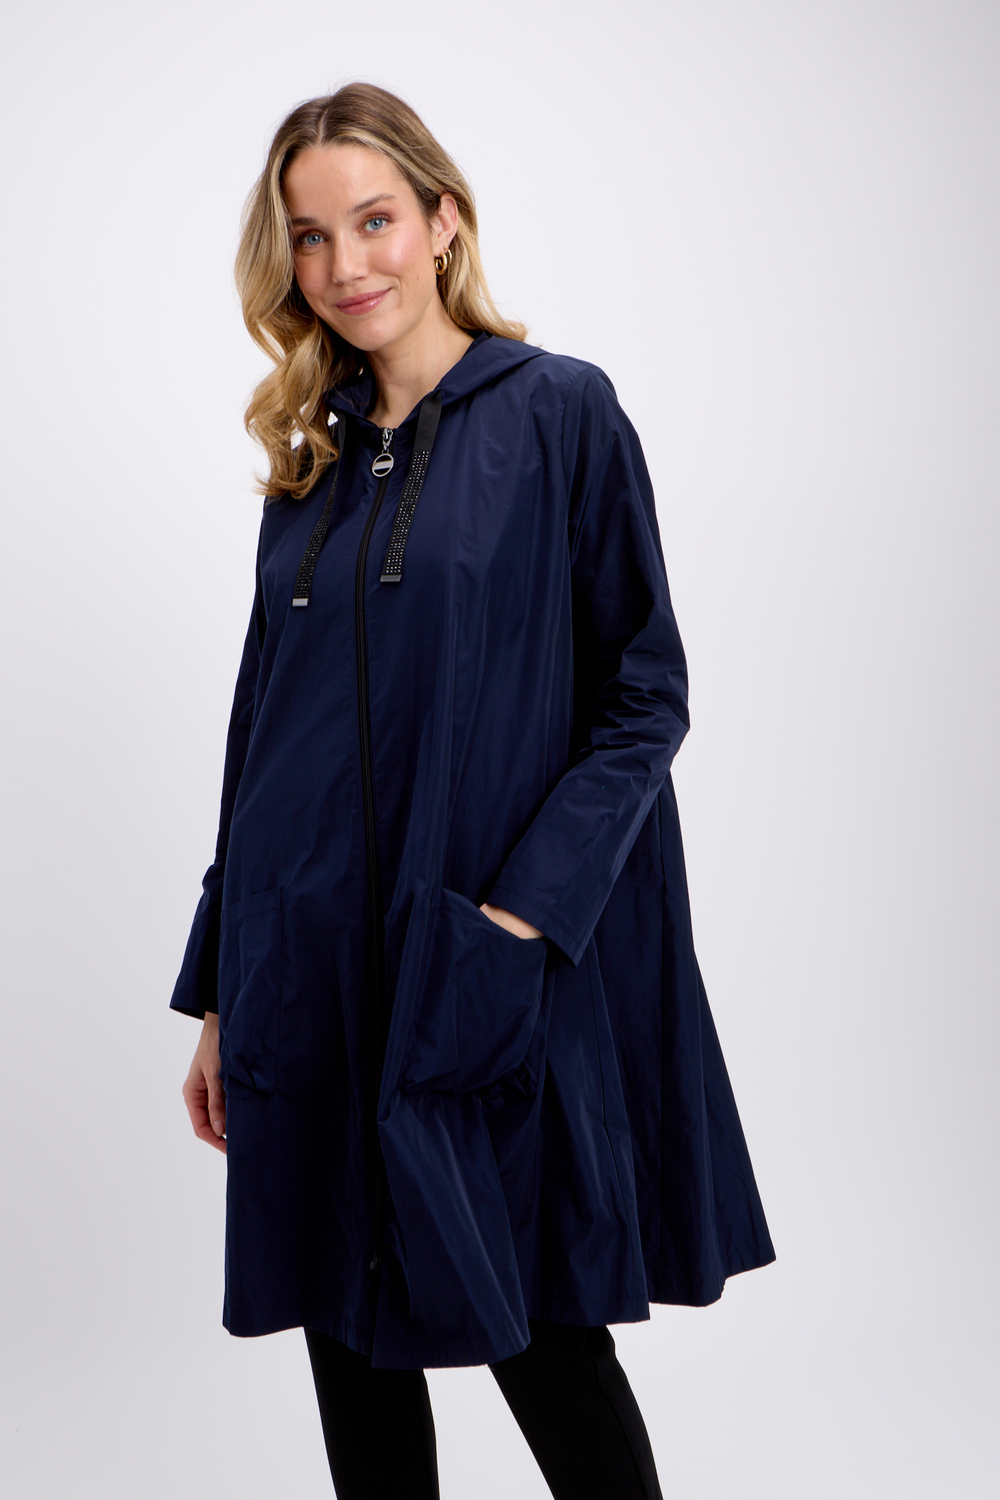 Manteau long évasé, zippé modèle 241068. Bleu Nuit